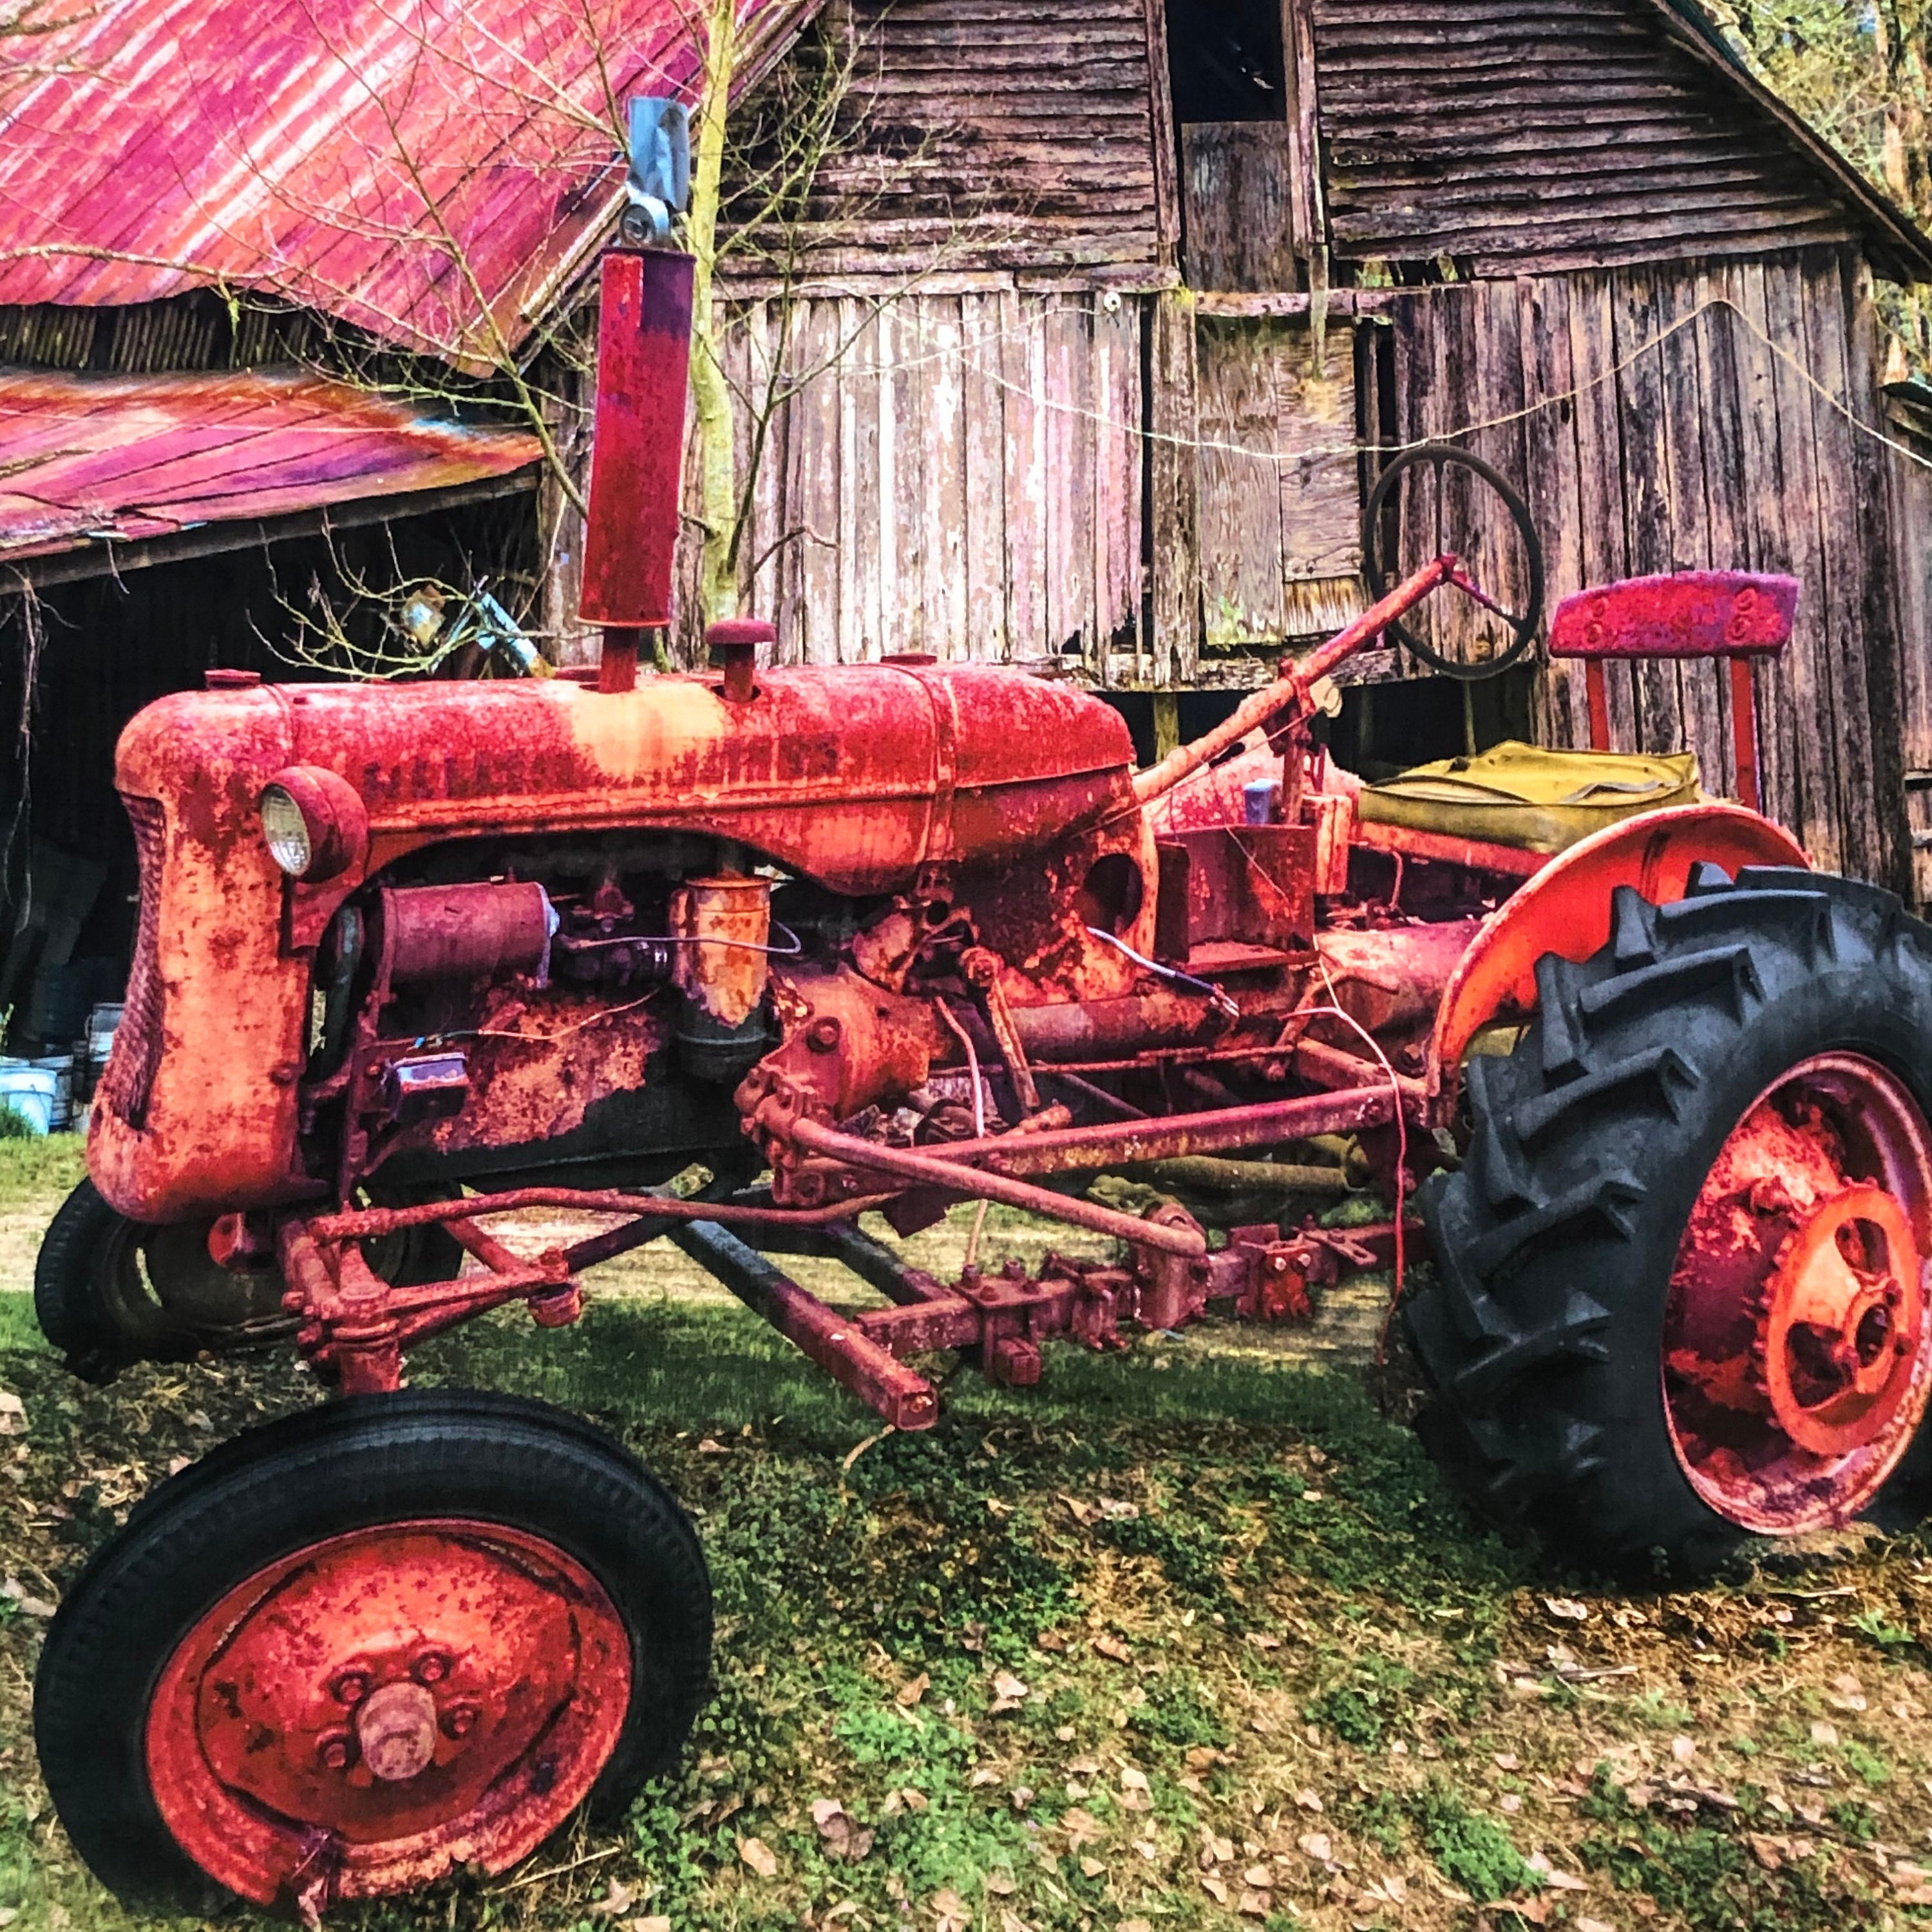 Vieux Tracteur Rouge Couvert De Neige Image stock - Image du panne, hiver:  137743825